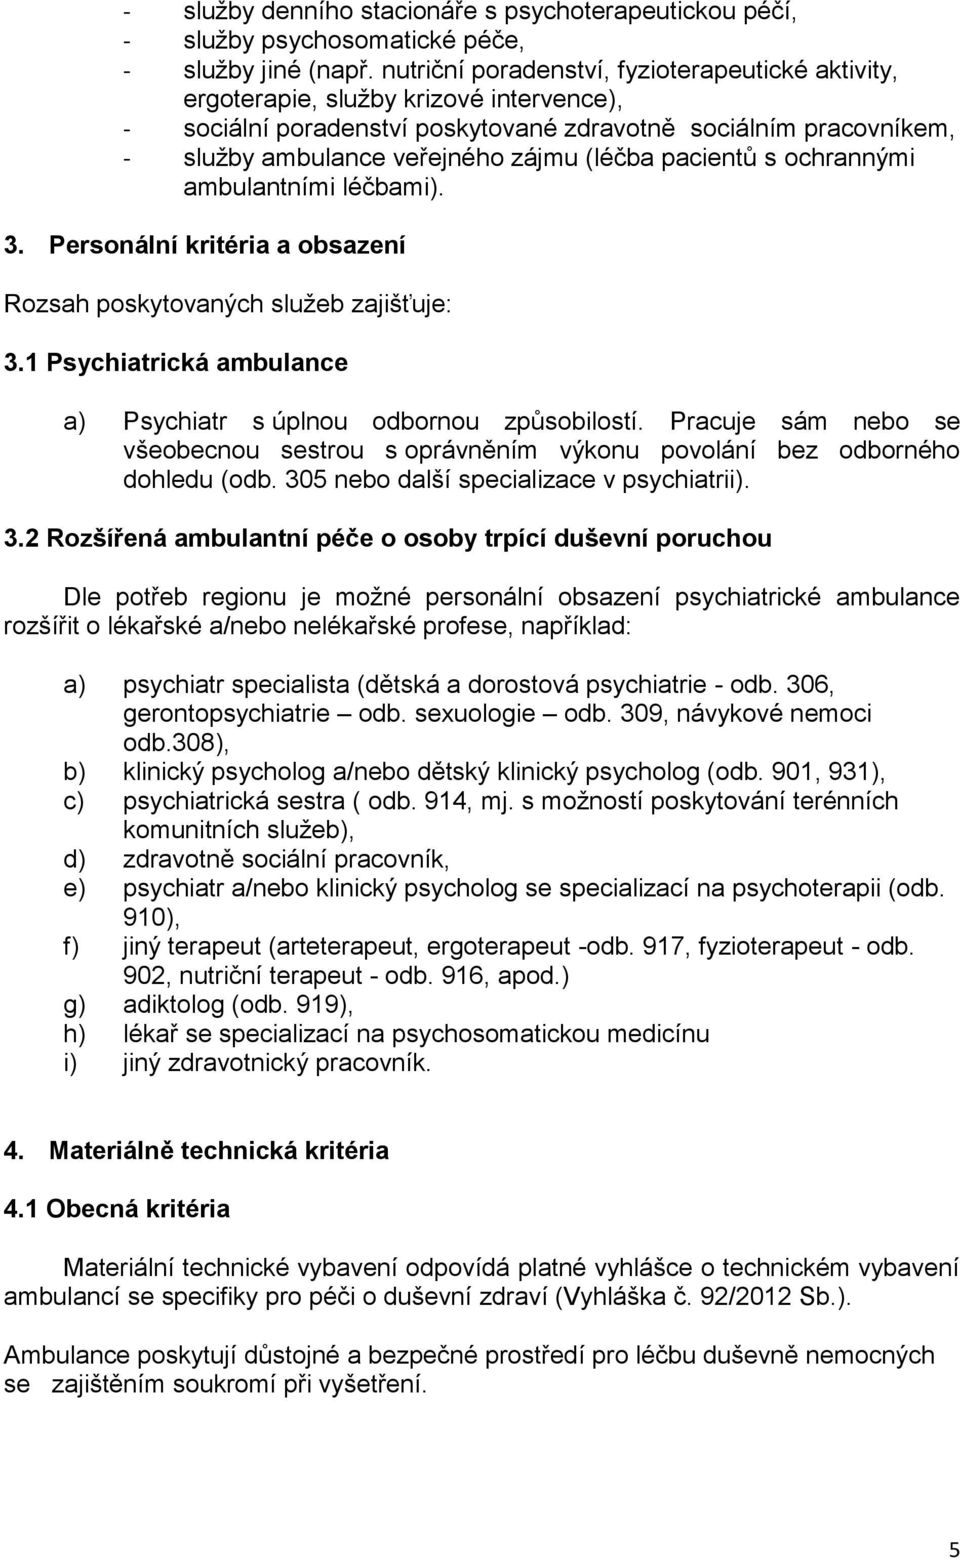 (léčba pacientů s ochrannými ambulantními léčbami). 3. Personální kritéria a obsazení Rozsah poskytovaných služeb zajišťuje: 3.1 Psychiatrická ambulance a) Psychiatr s úplnou odbornou způsobilostí.